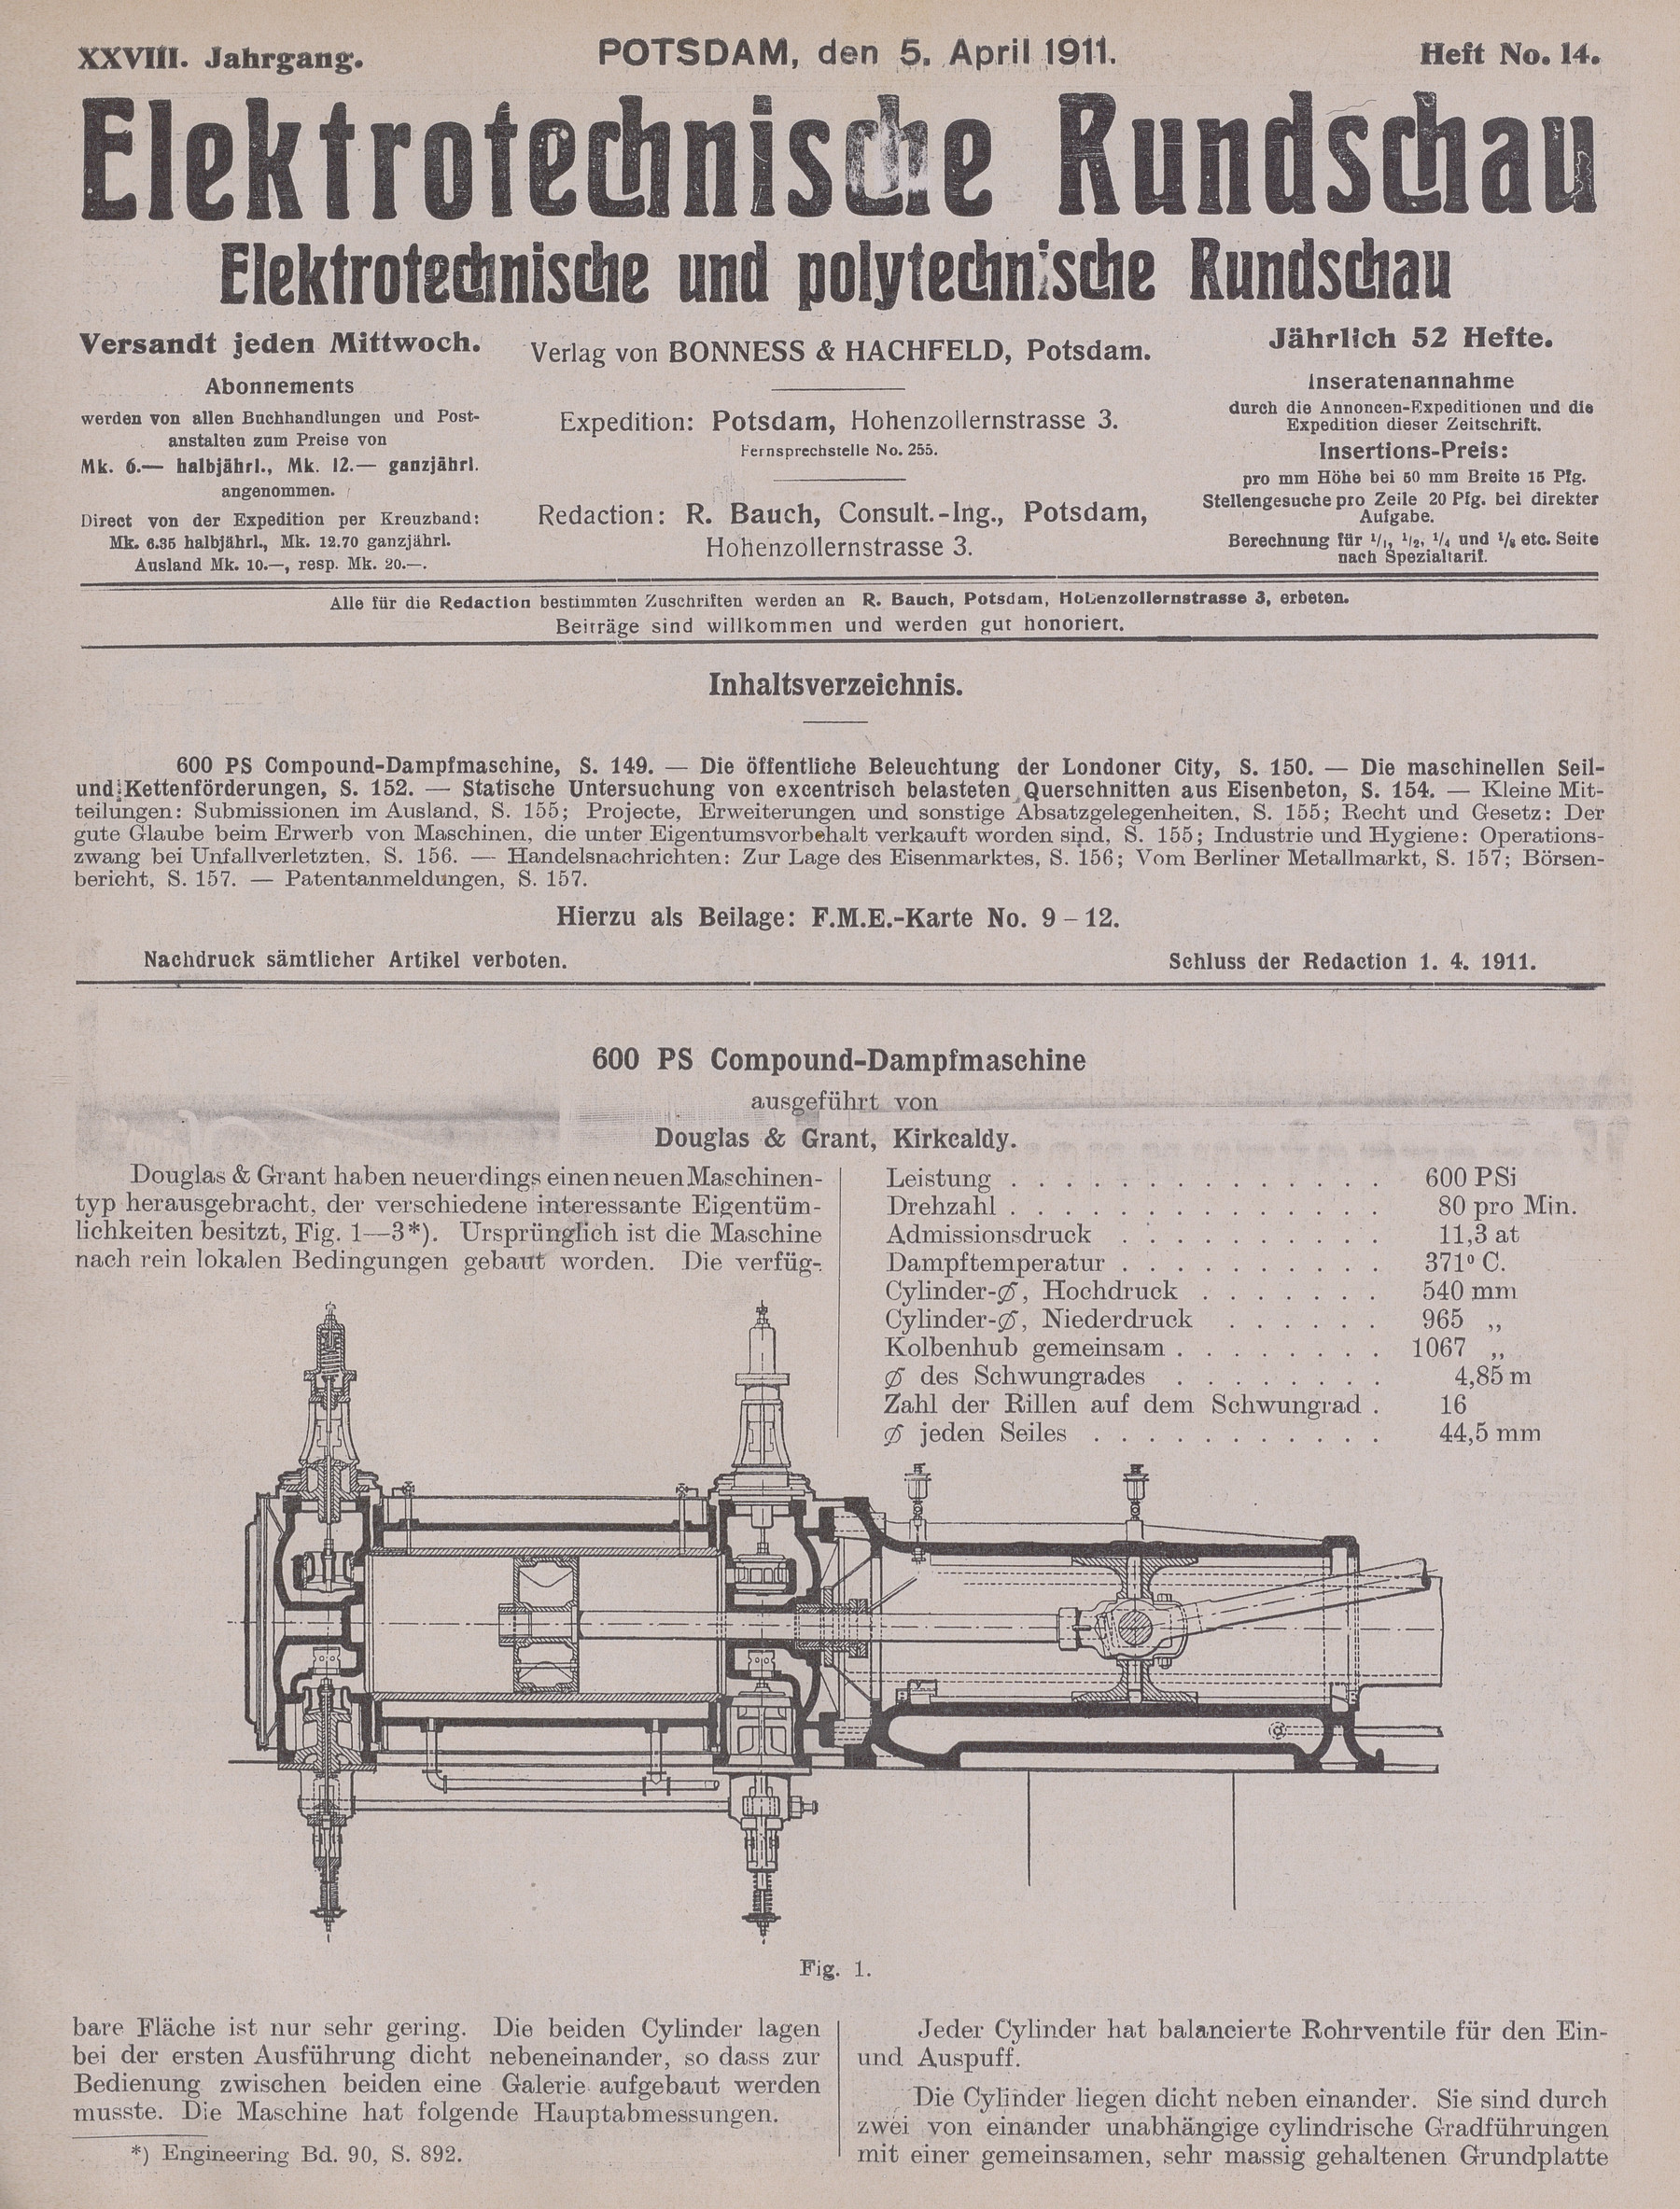 Elektrotechnische Rundschau : Elektrotechnische und polytechnische Rundschau, XXVIII. Jahrgang, Heft No. 14